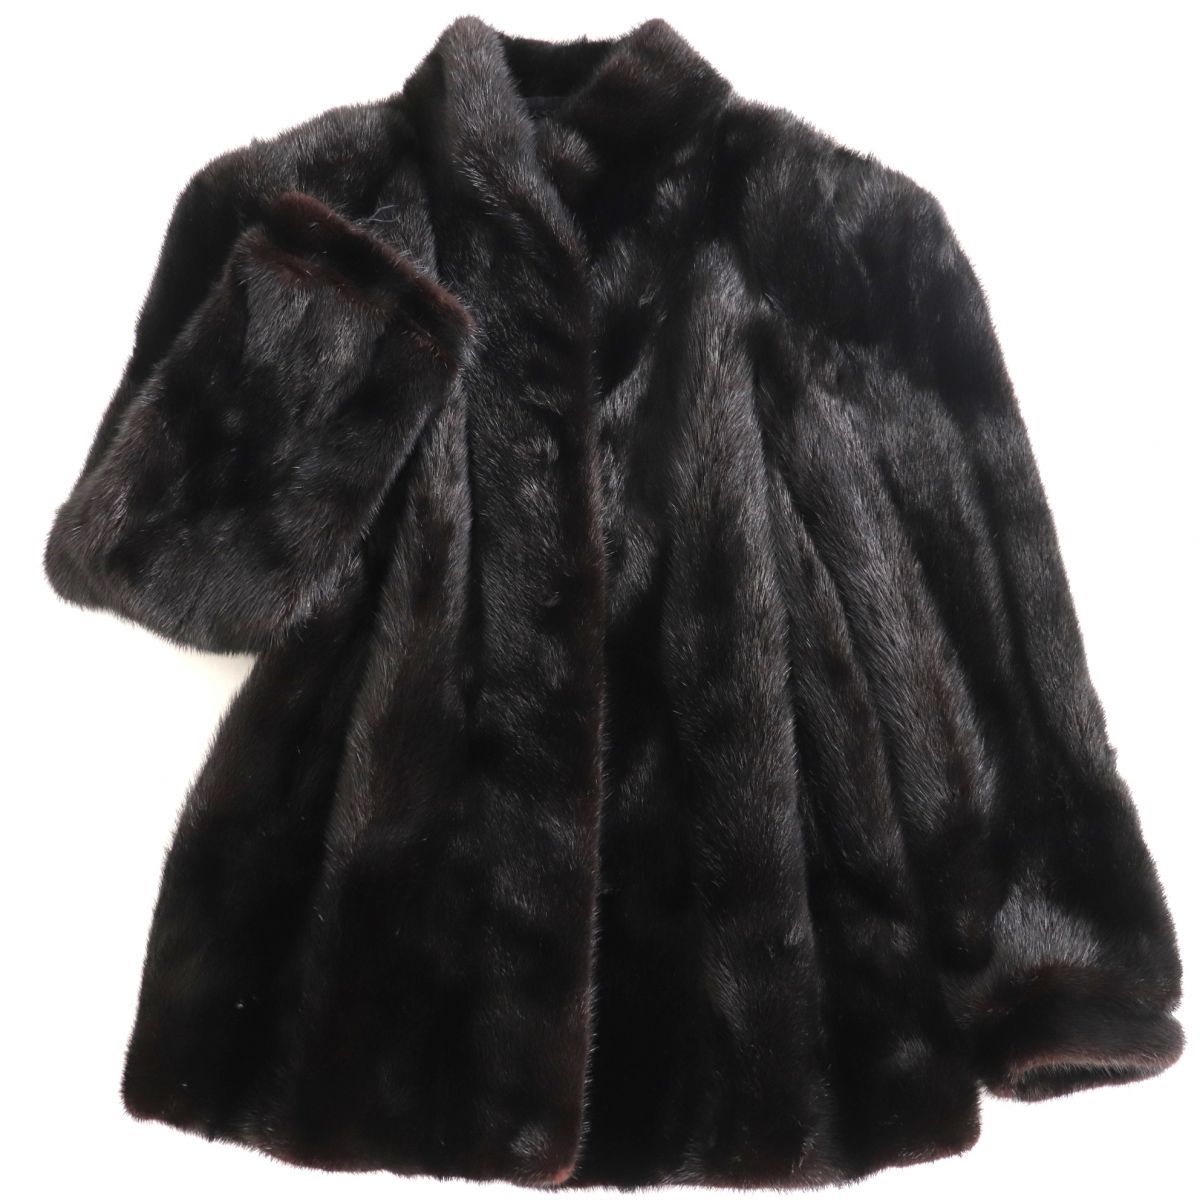 美品▼SAGA MINK サガミンク 本毛皮コート ブラック 大きめサイズ15号 毛質艶やか・柔らか◎